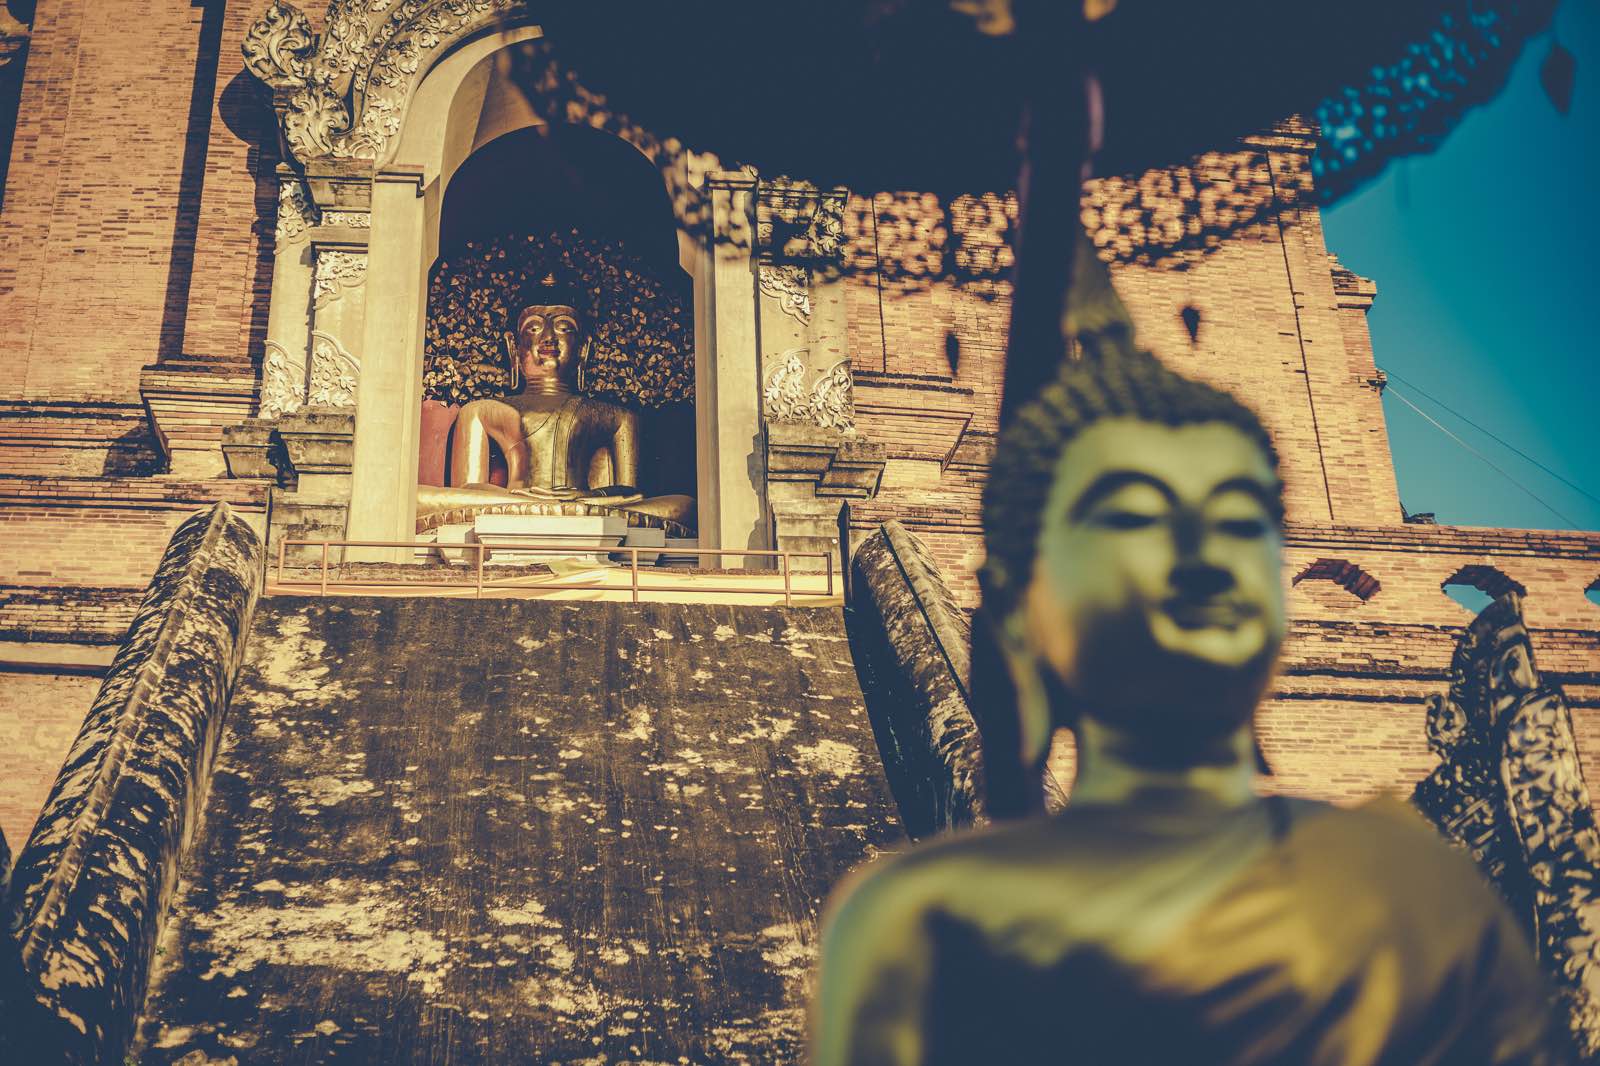 放下行李就进了古城，慢慢溜达到契迪龙寺，这是清迈市内最著名的寺庙之一，